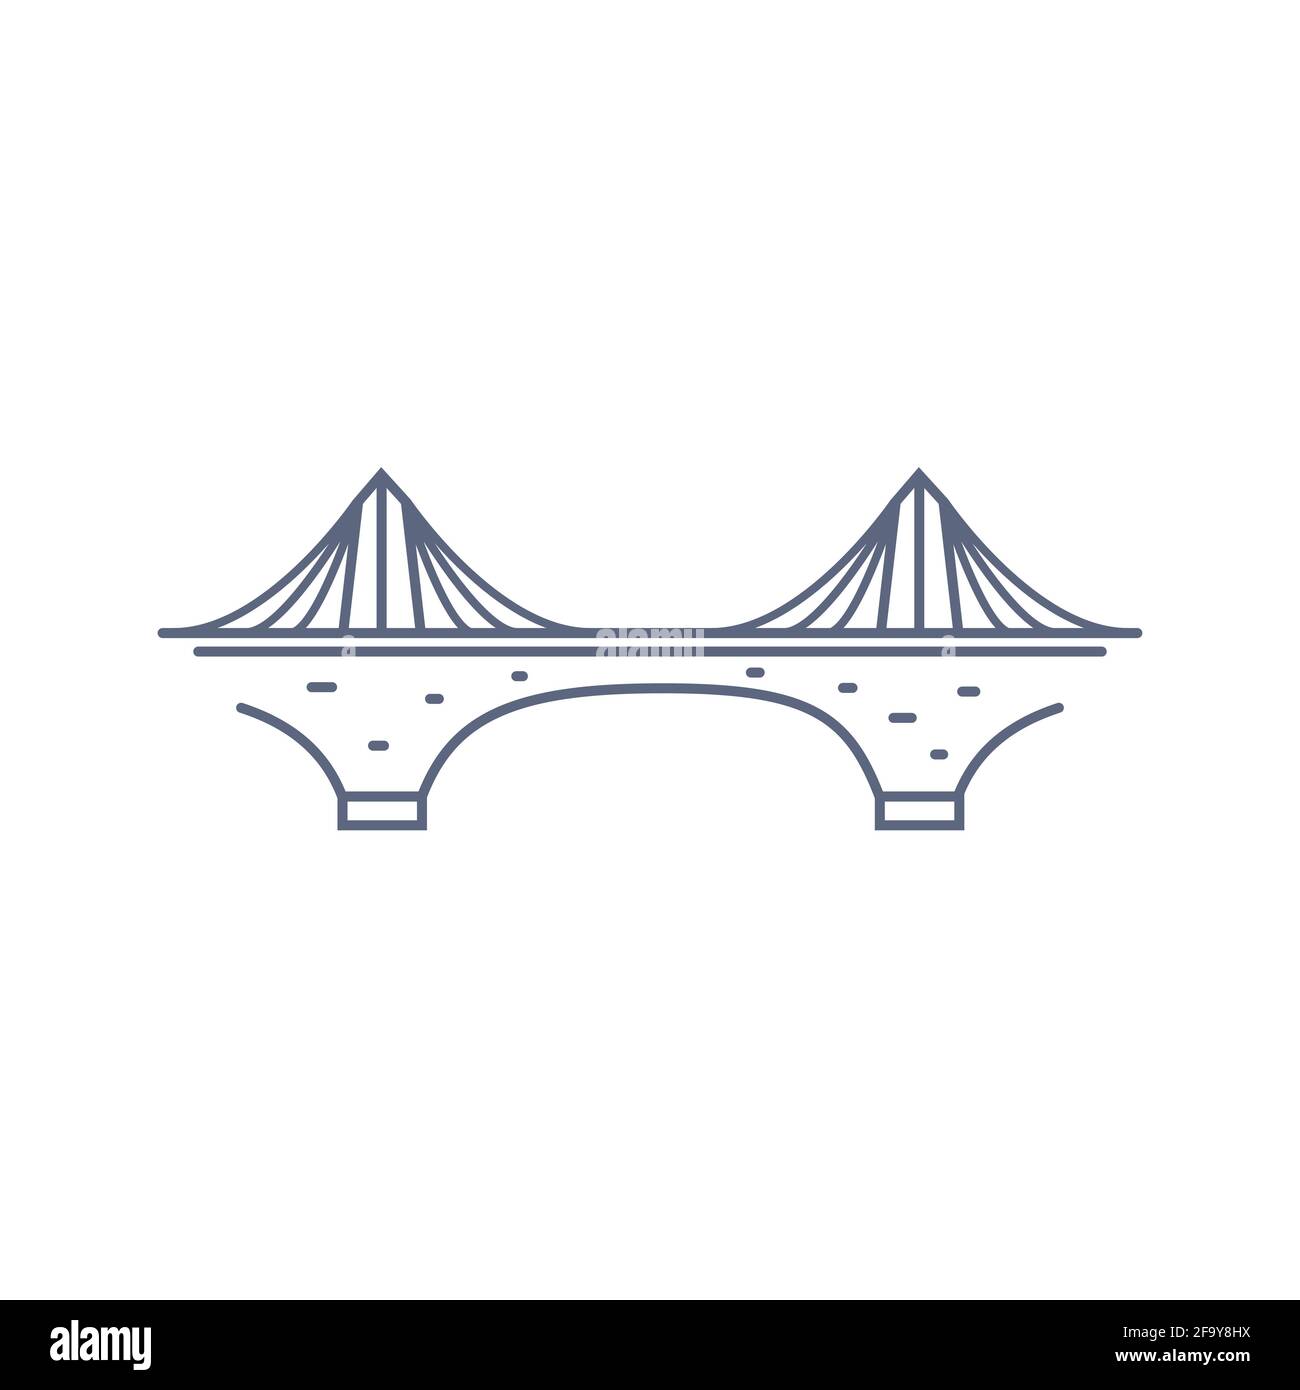 Icona del vettore della linea di ponte - pittogramma del ponte di sospensione semplice in stile lineare su sfondo bianco. Illustrazione vettoriale. Illustrazione Vettoriale